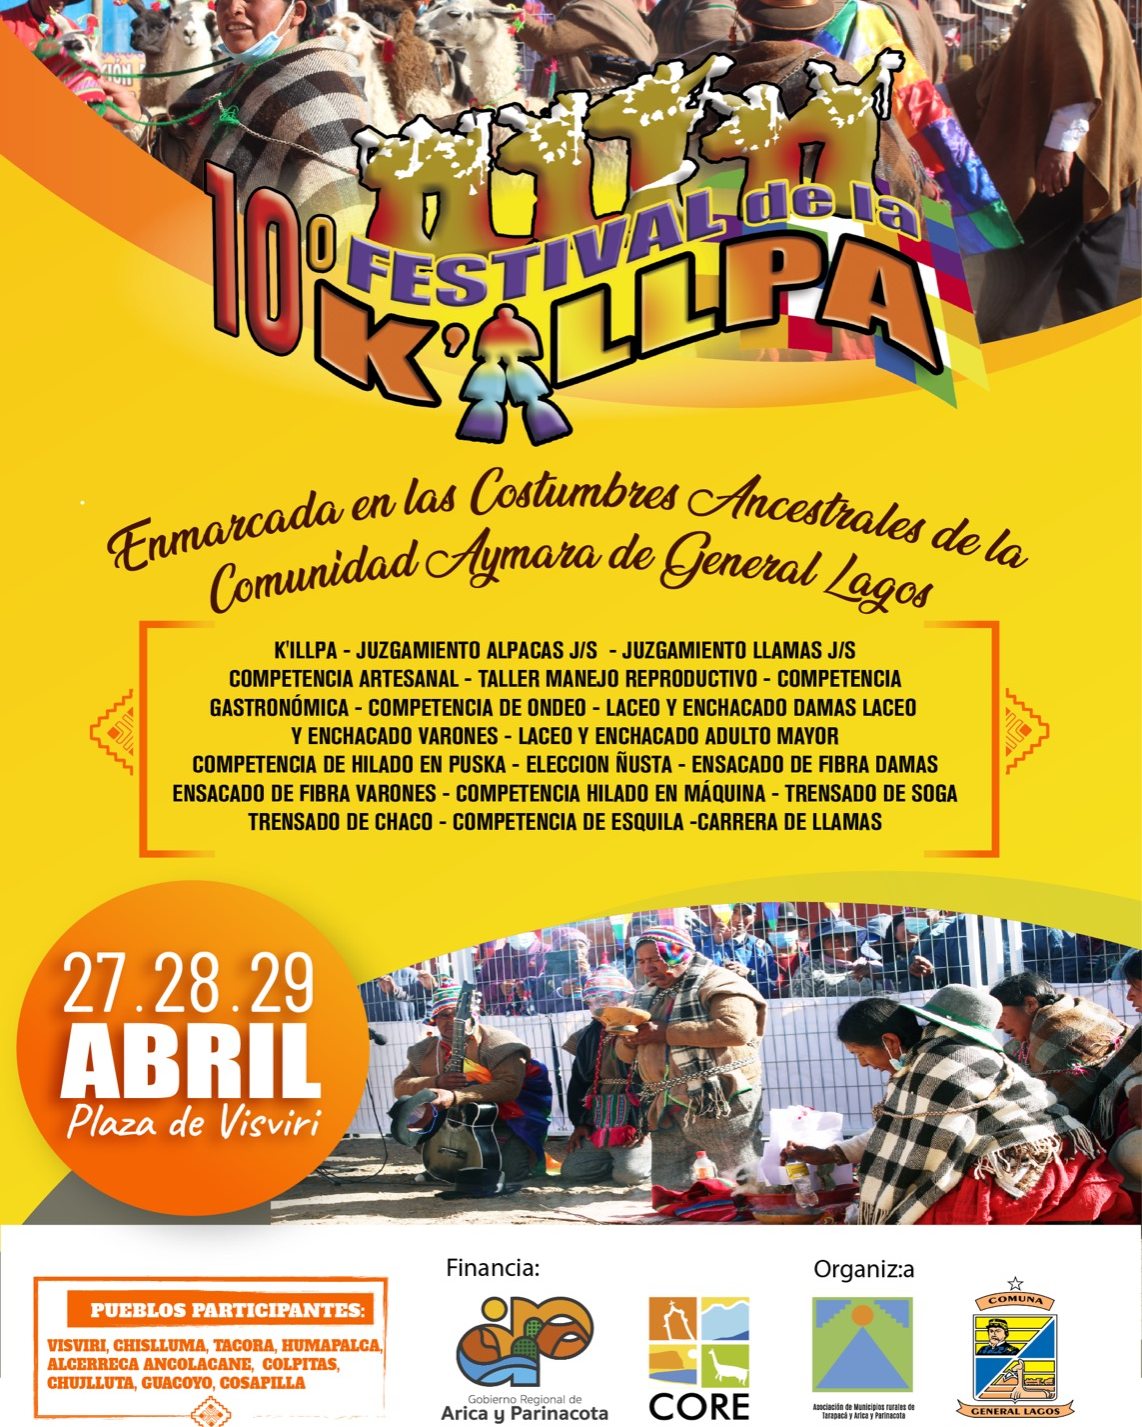 10 Festival de la K'allpa